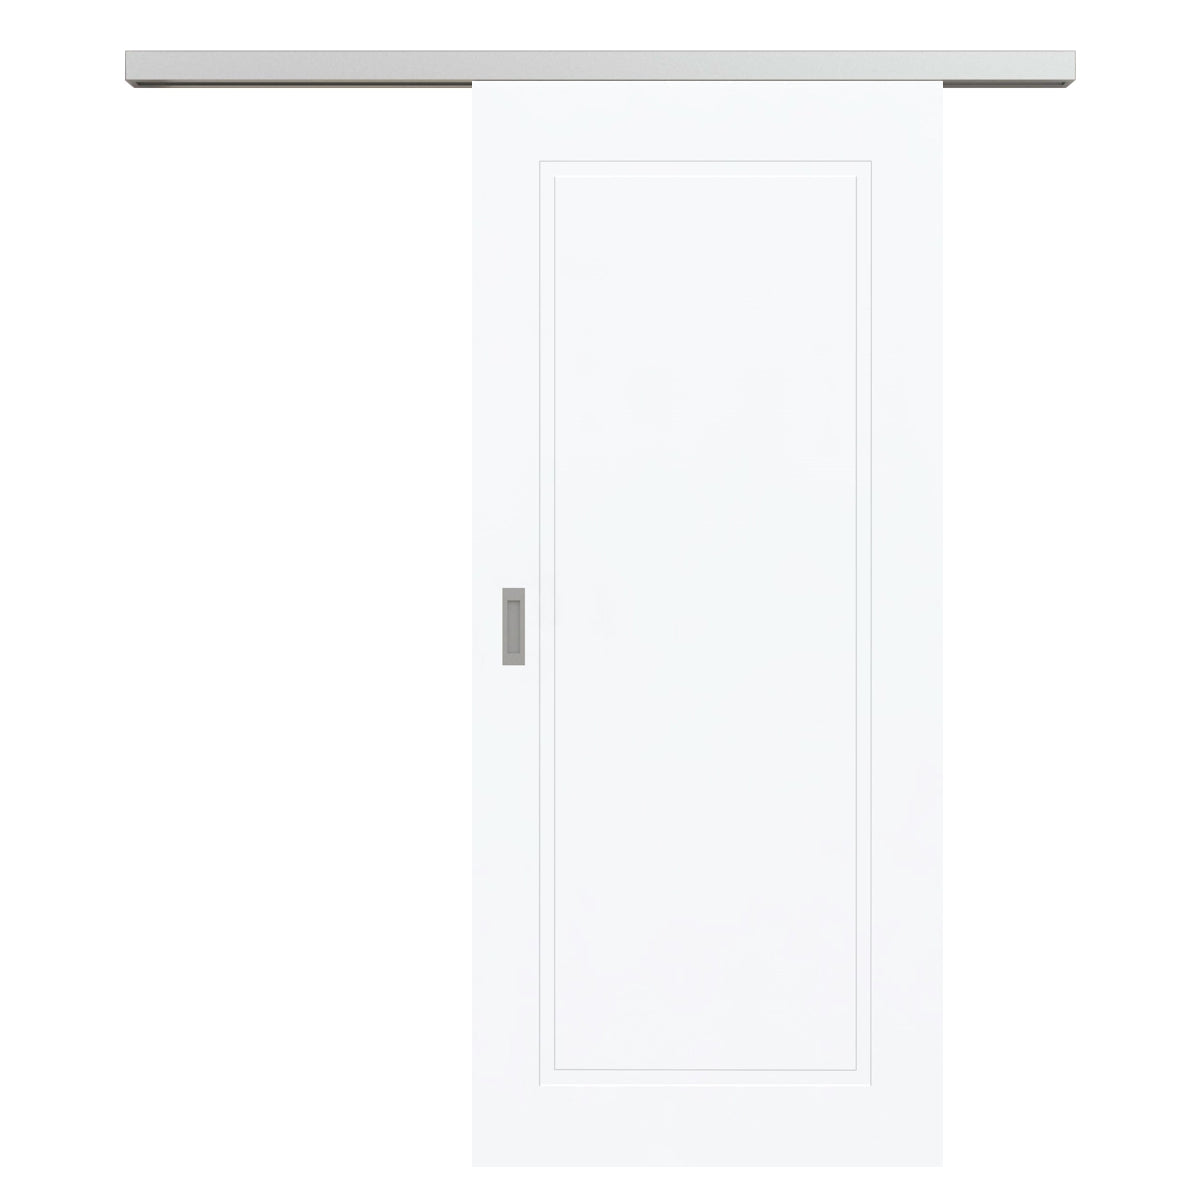 Schiebetür für Set mit Edelstahllaufkasten brillant-weiß Stiltür mit 1 Kassette - Modell Stiltür M13